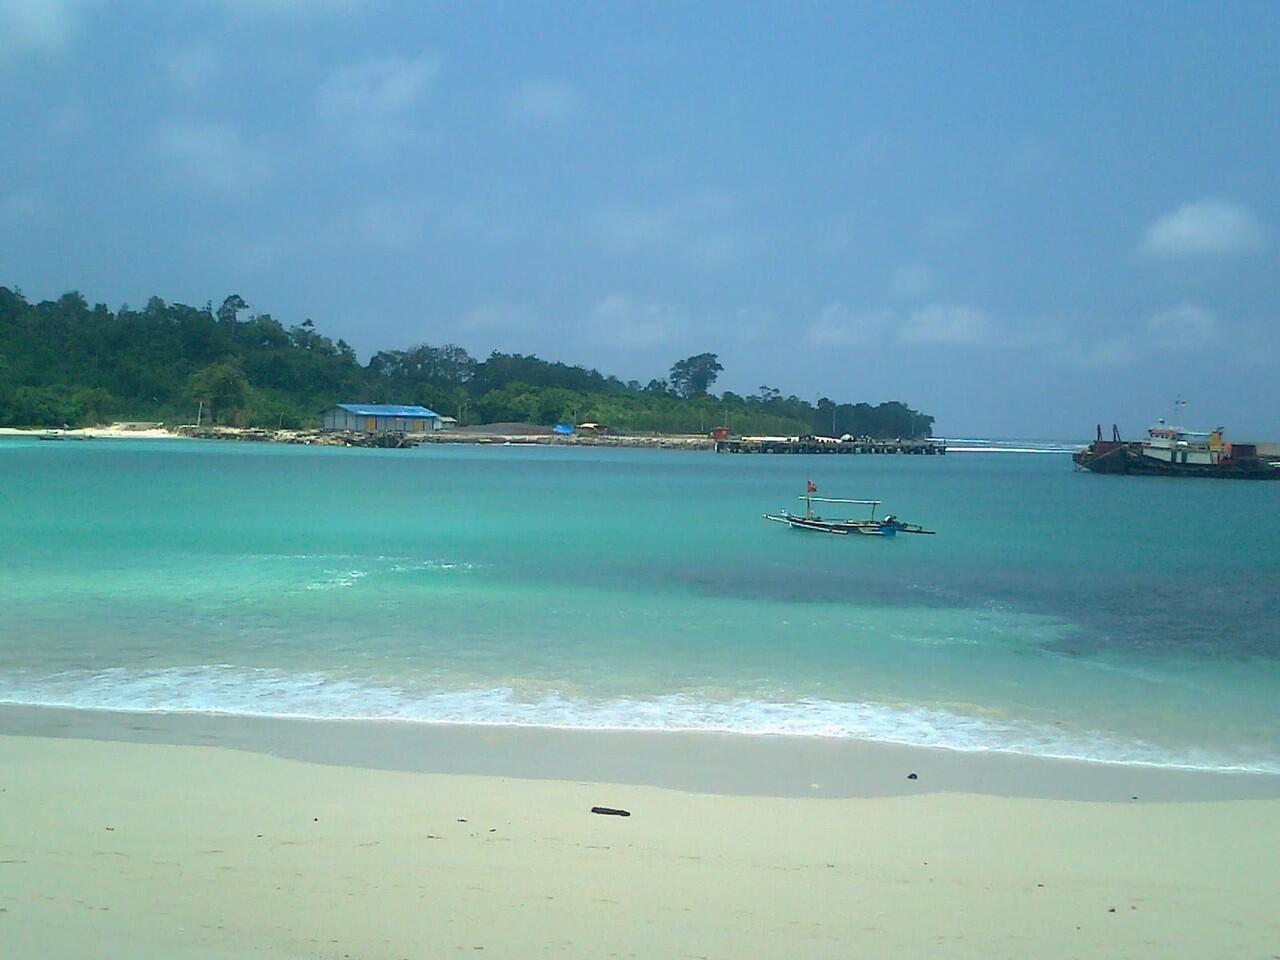 Pantai pantai di Indonesia...semua provinsi gannn